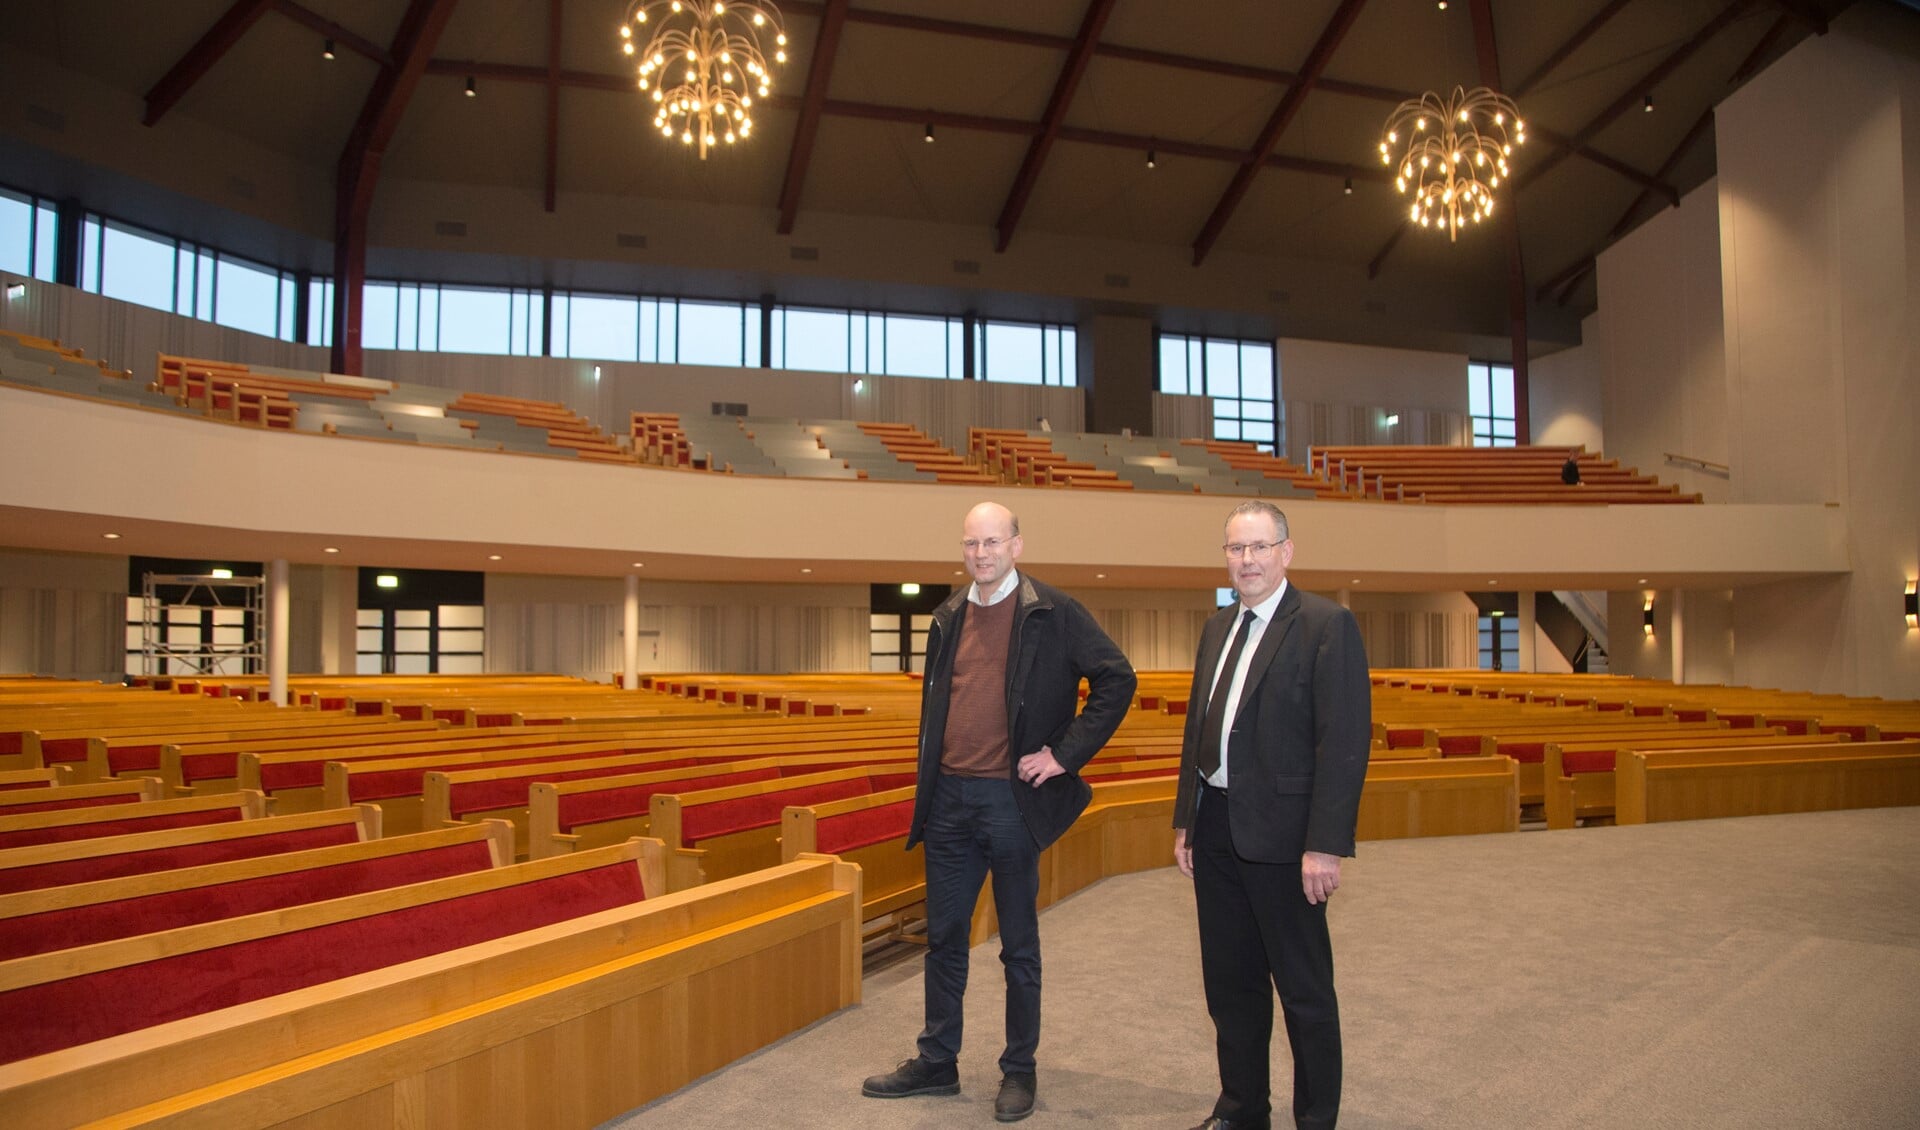 Ouderling Jan Henk Verschuur (rechts) en voorzitter Dirk Bos van de bouwcommissie met op de achtergrond een deel van de nieuwe galerij.